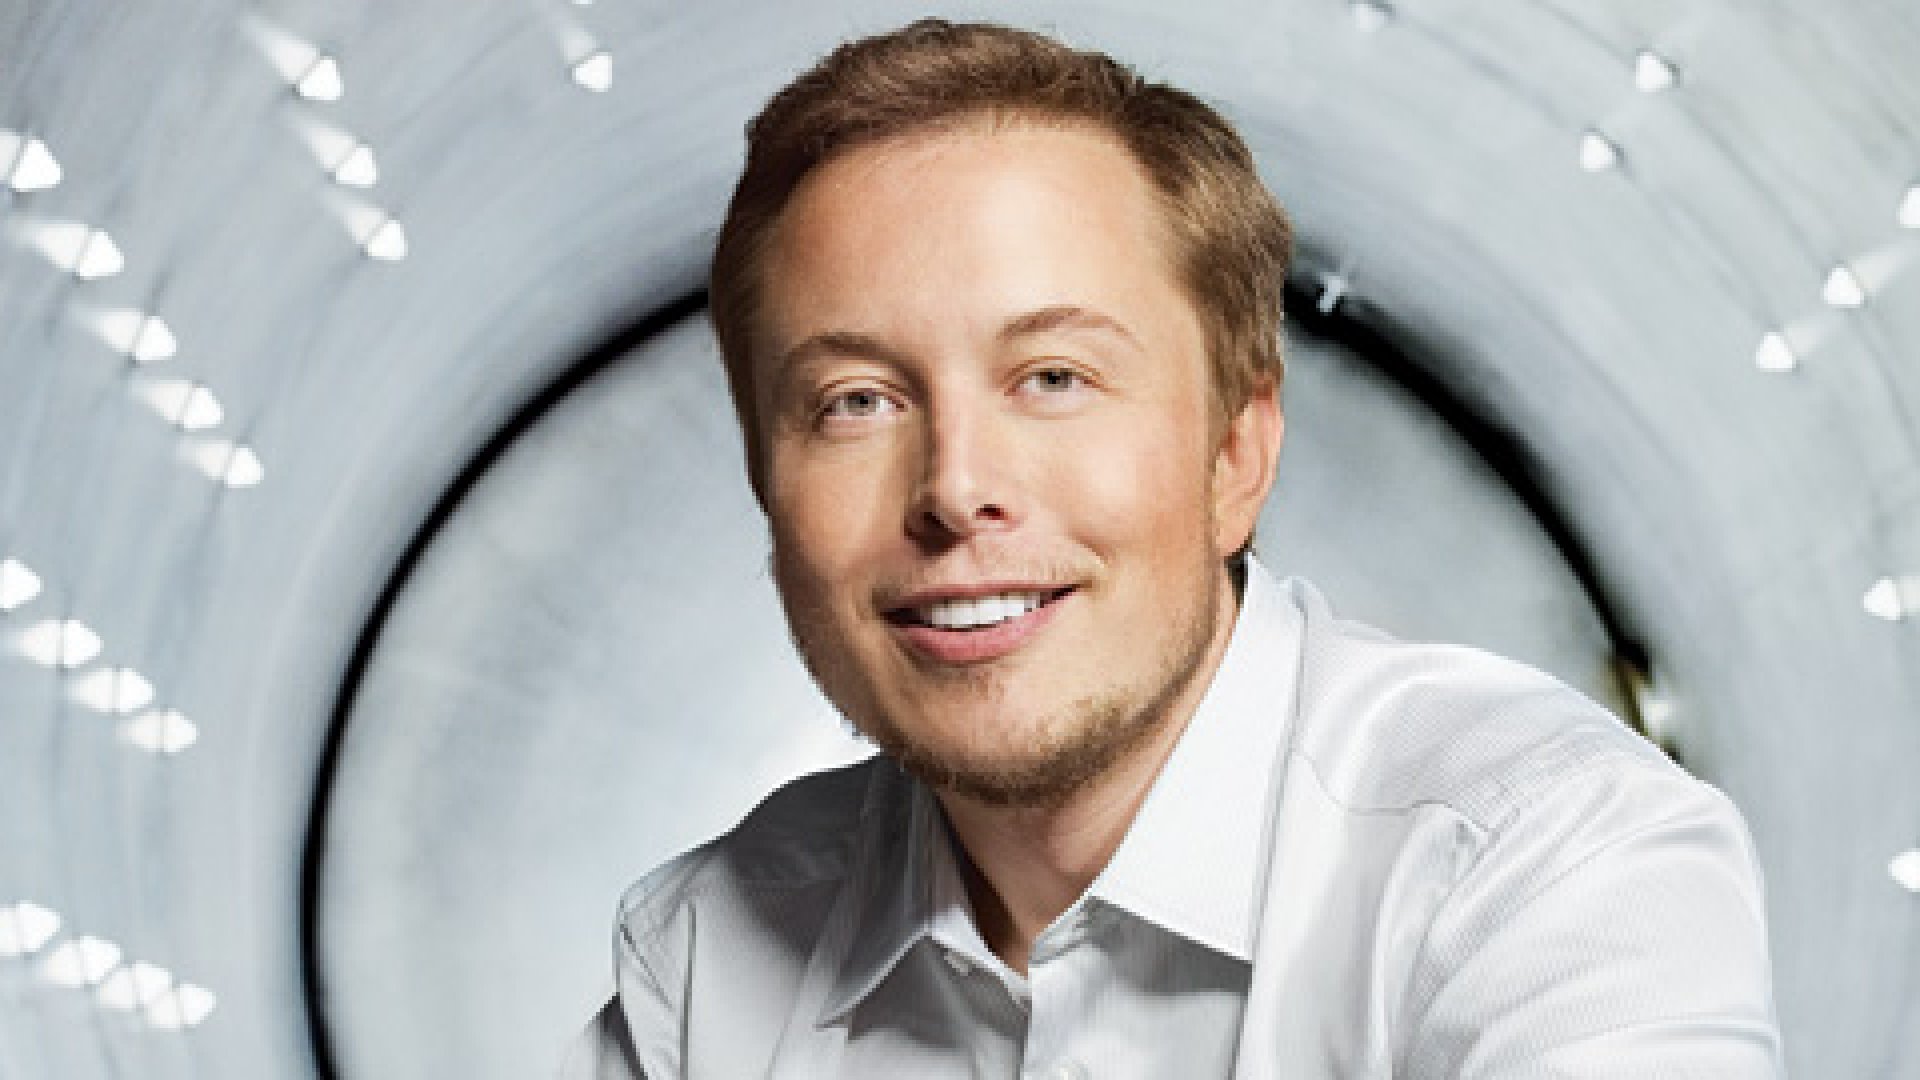 According to Elon Musk Warren Buffett Should Purchase Tesla Shares